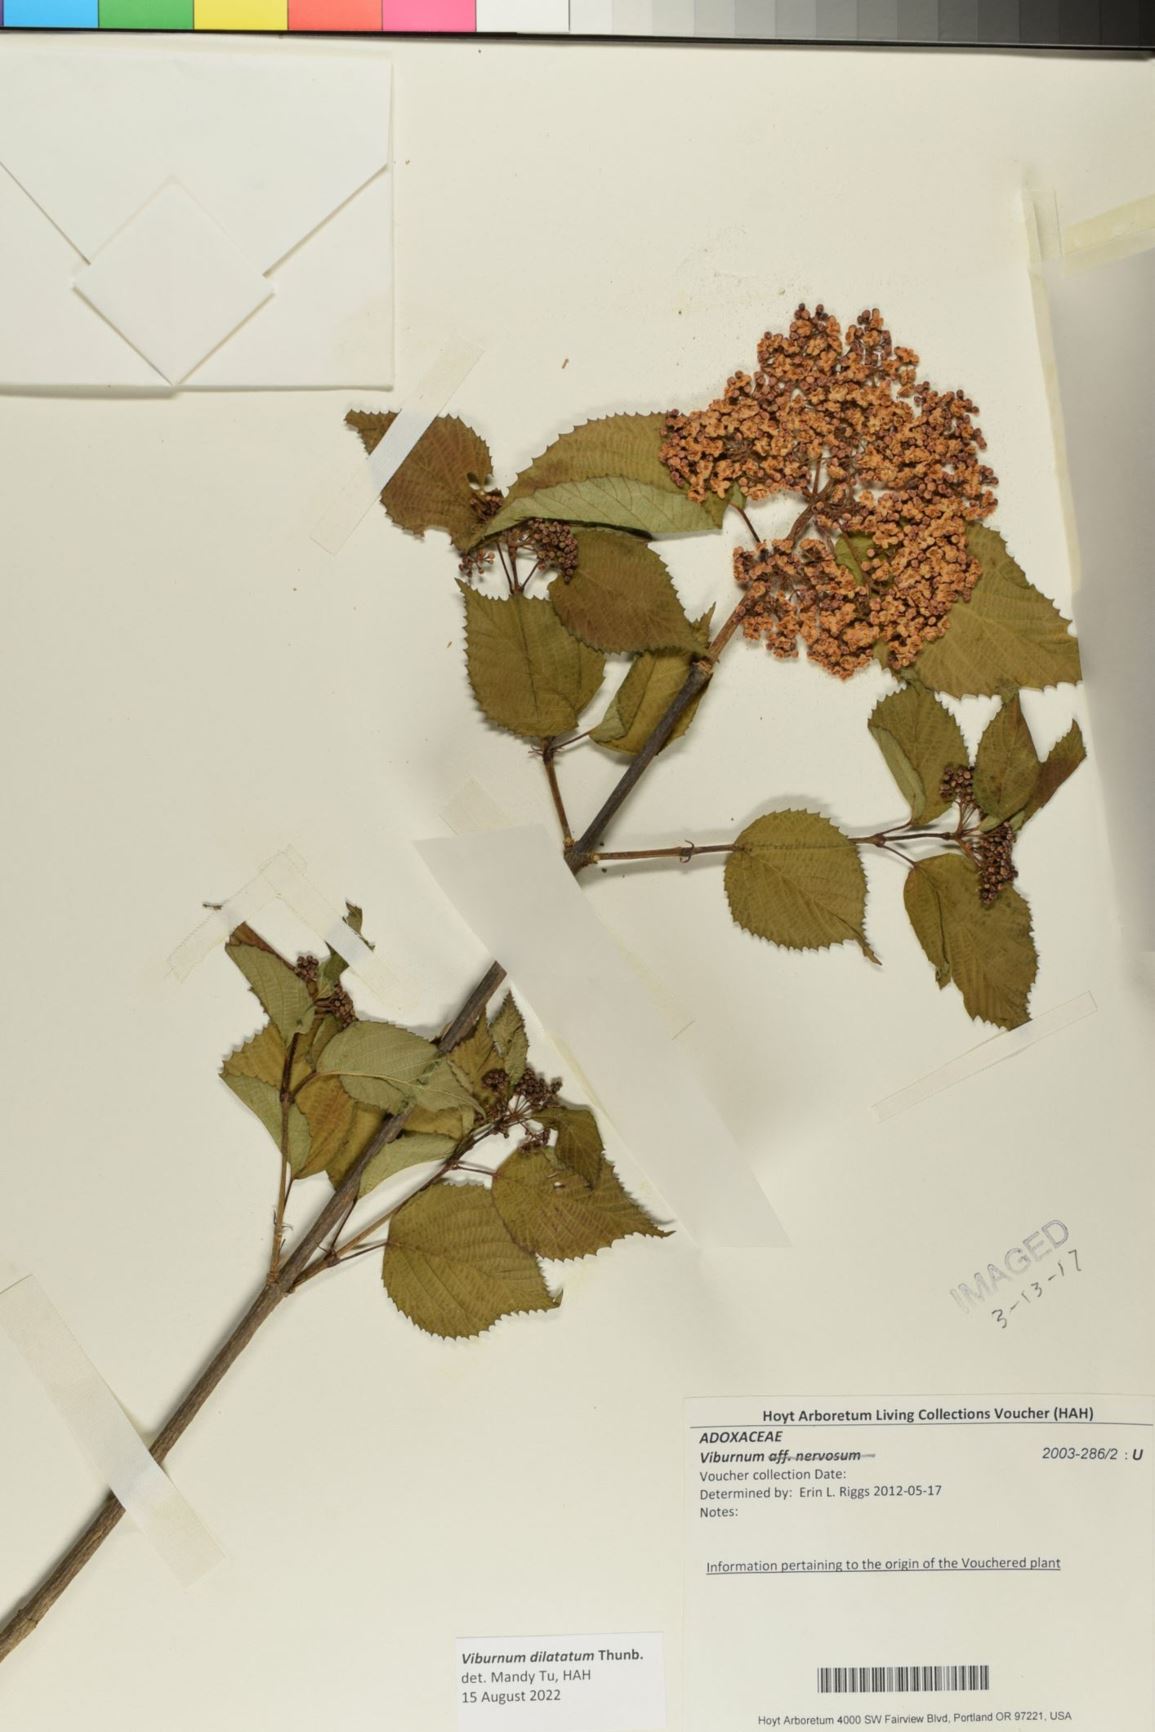 Viburnum dilatatum - Linden Viburnum, linden arrowwood